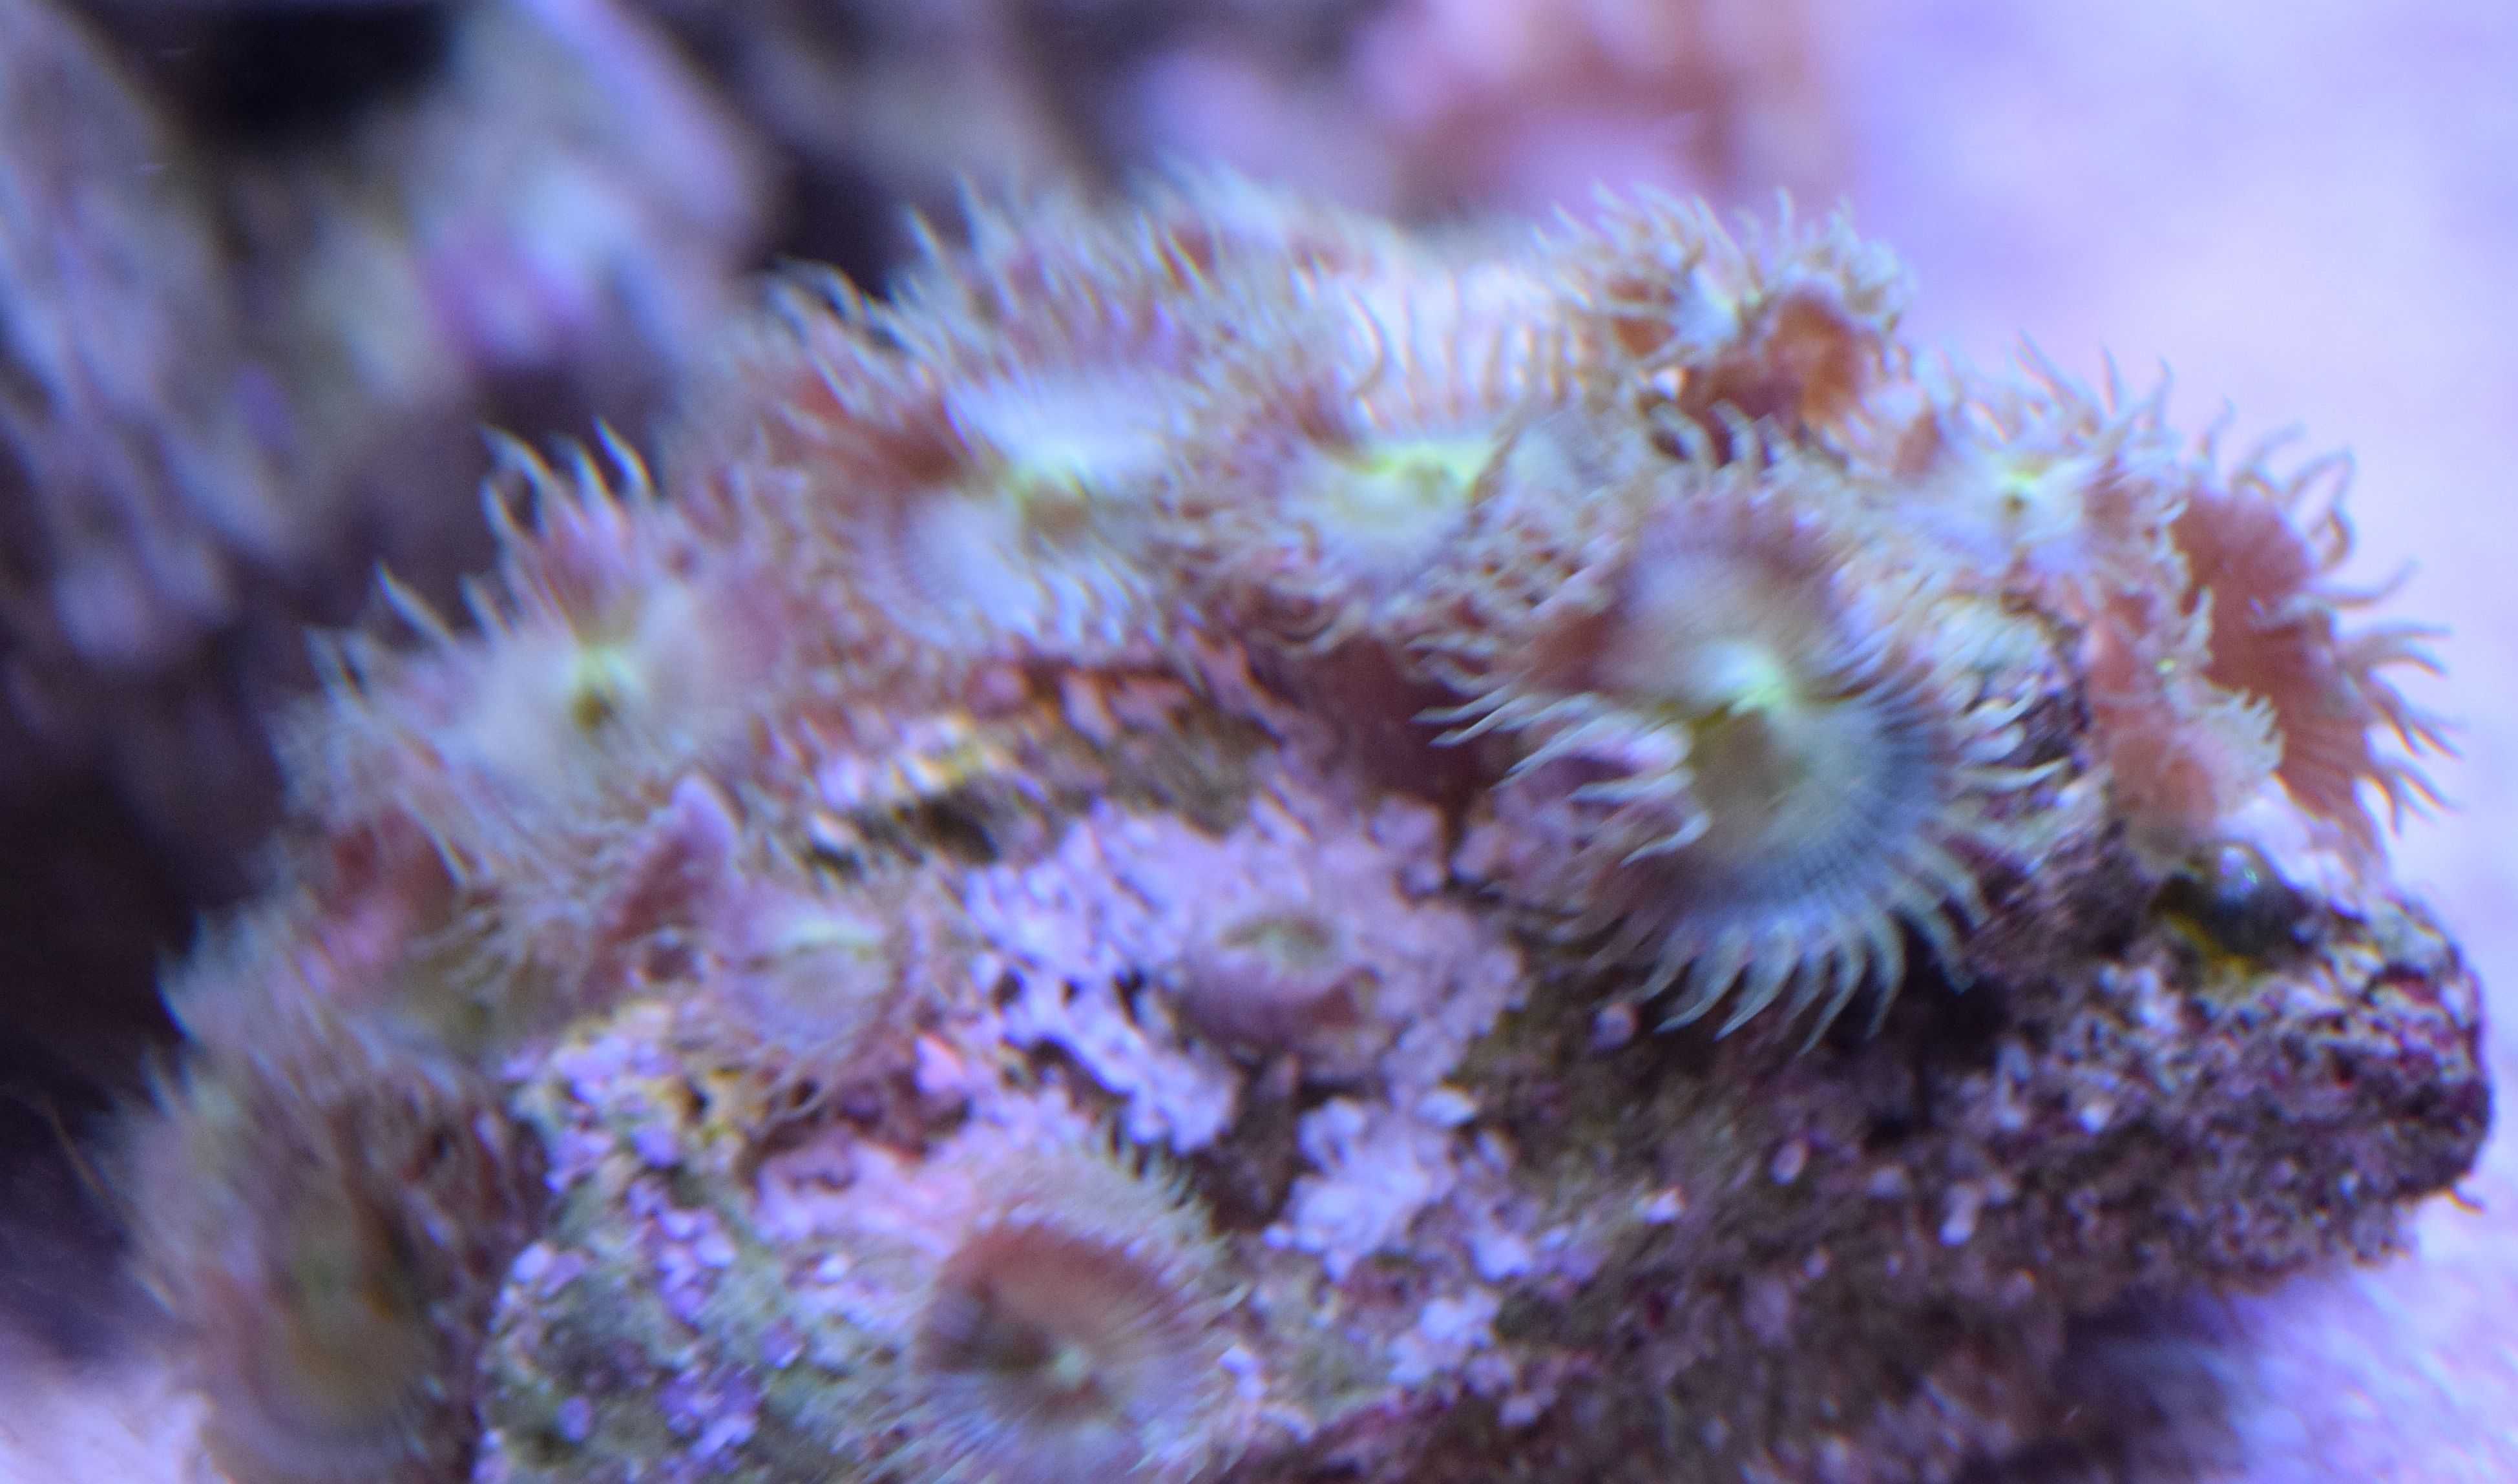 palythoa nuclear piękny zielony koralowiec